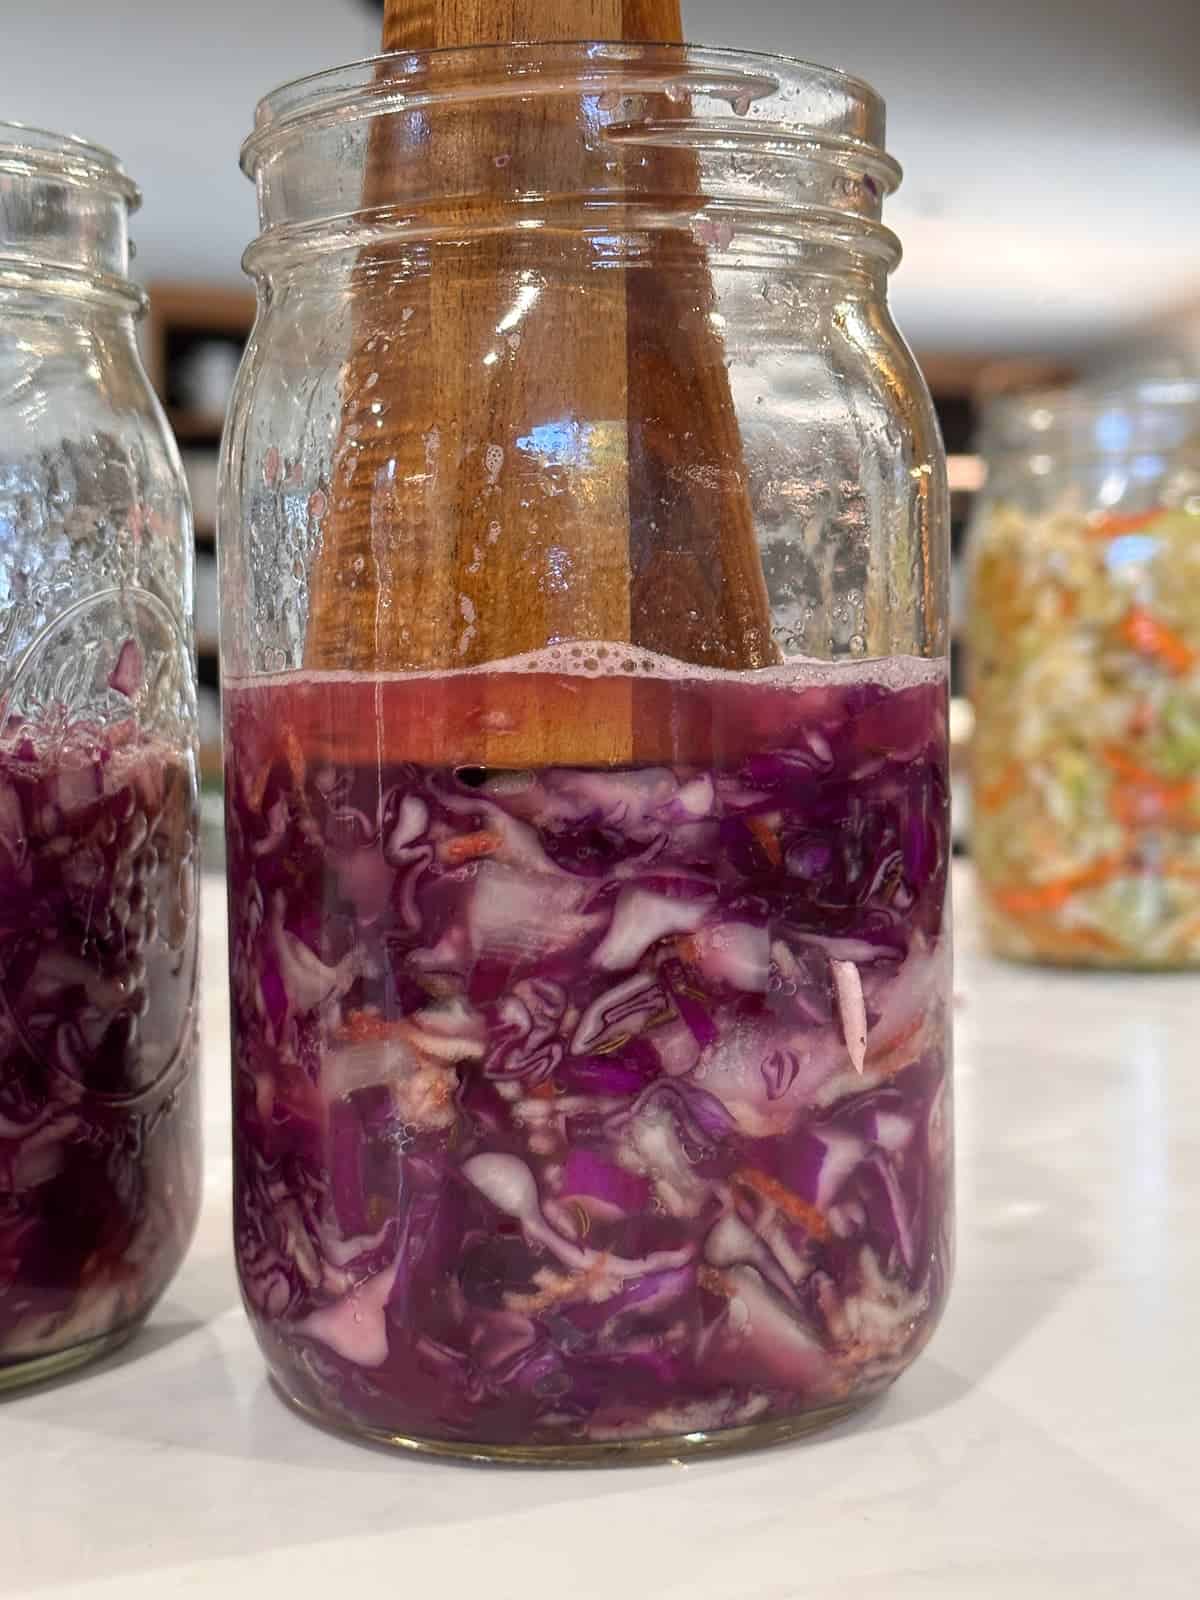 red sauerkraut being packed into jars